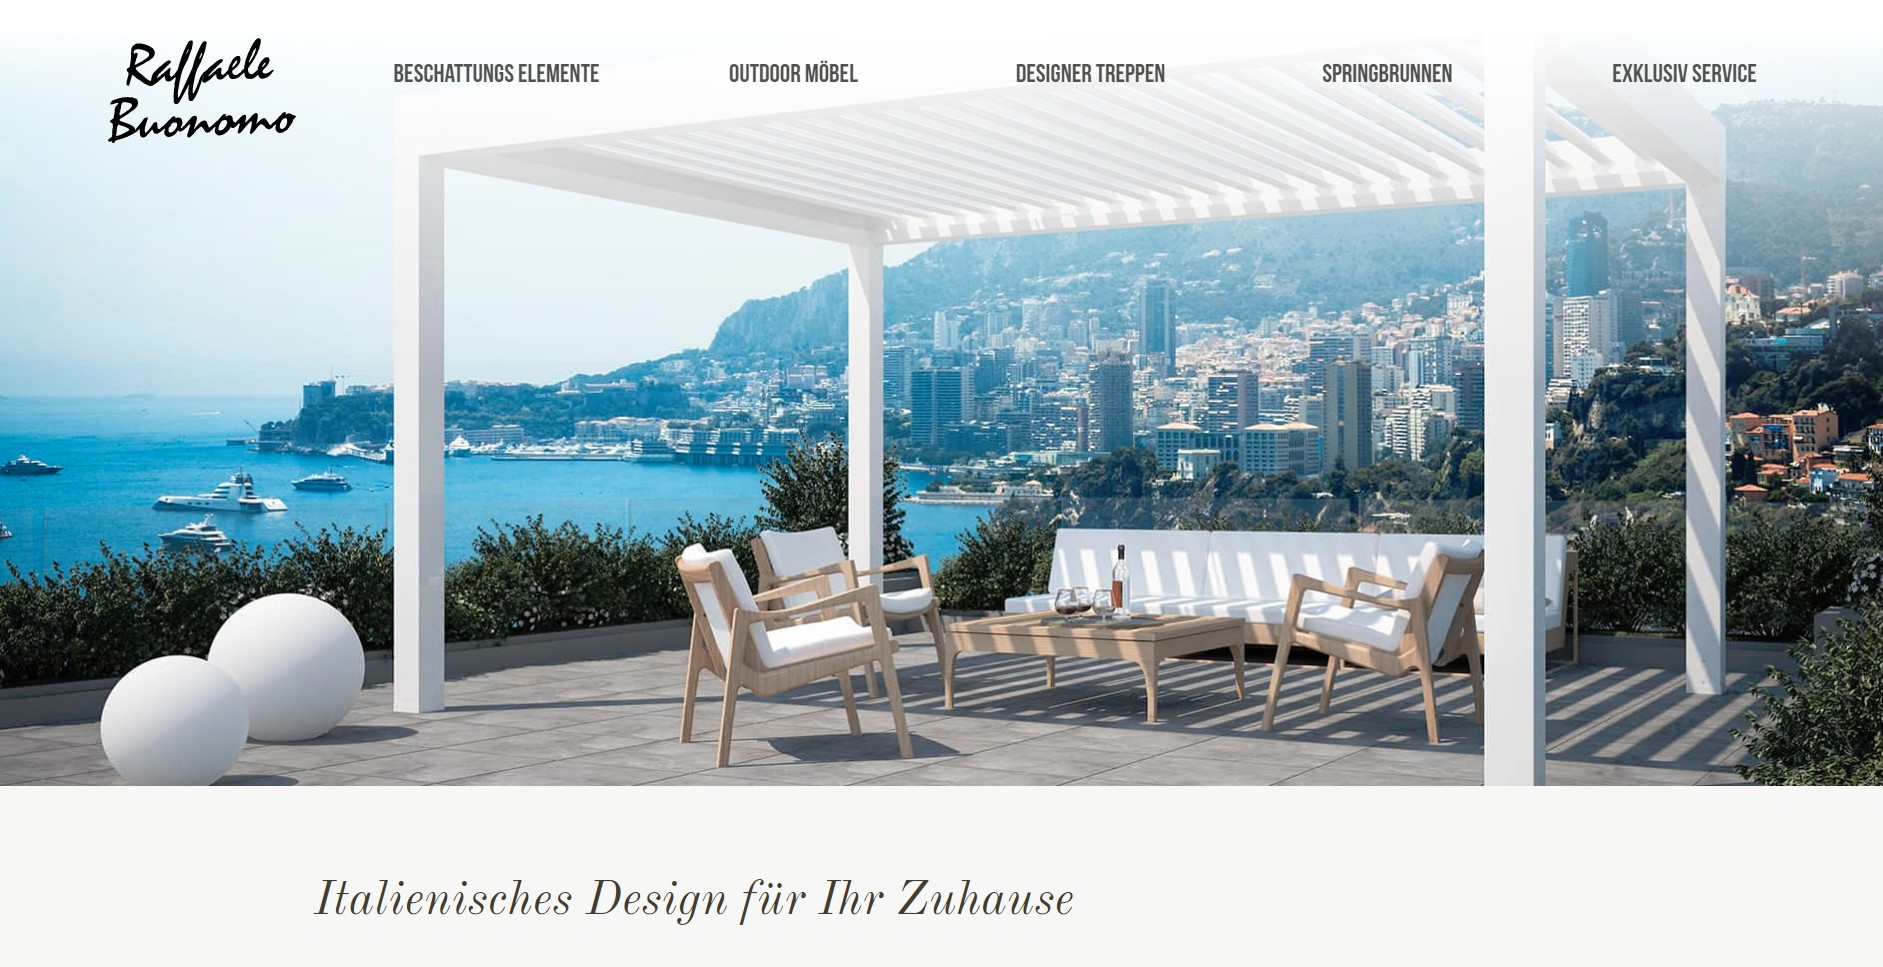 Die Startseite der Raffaele-Buonomo Website besticht durch einen herrlich sommerlichen Ersteindruck